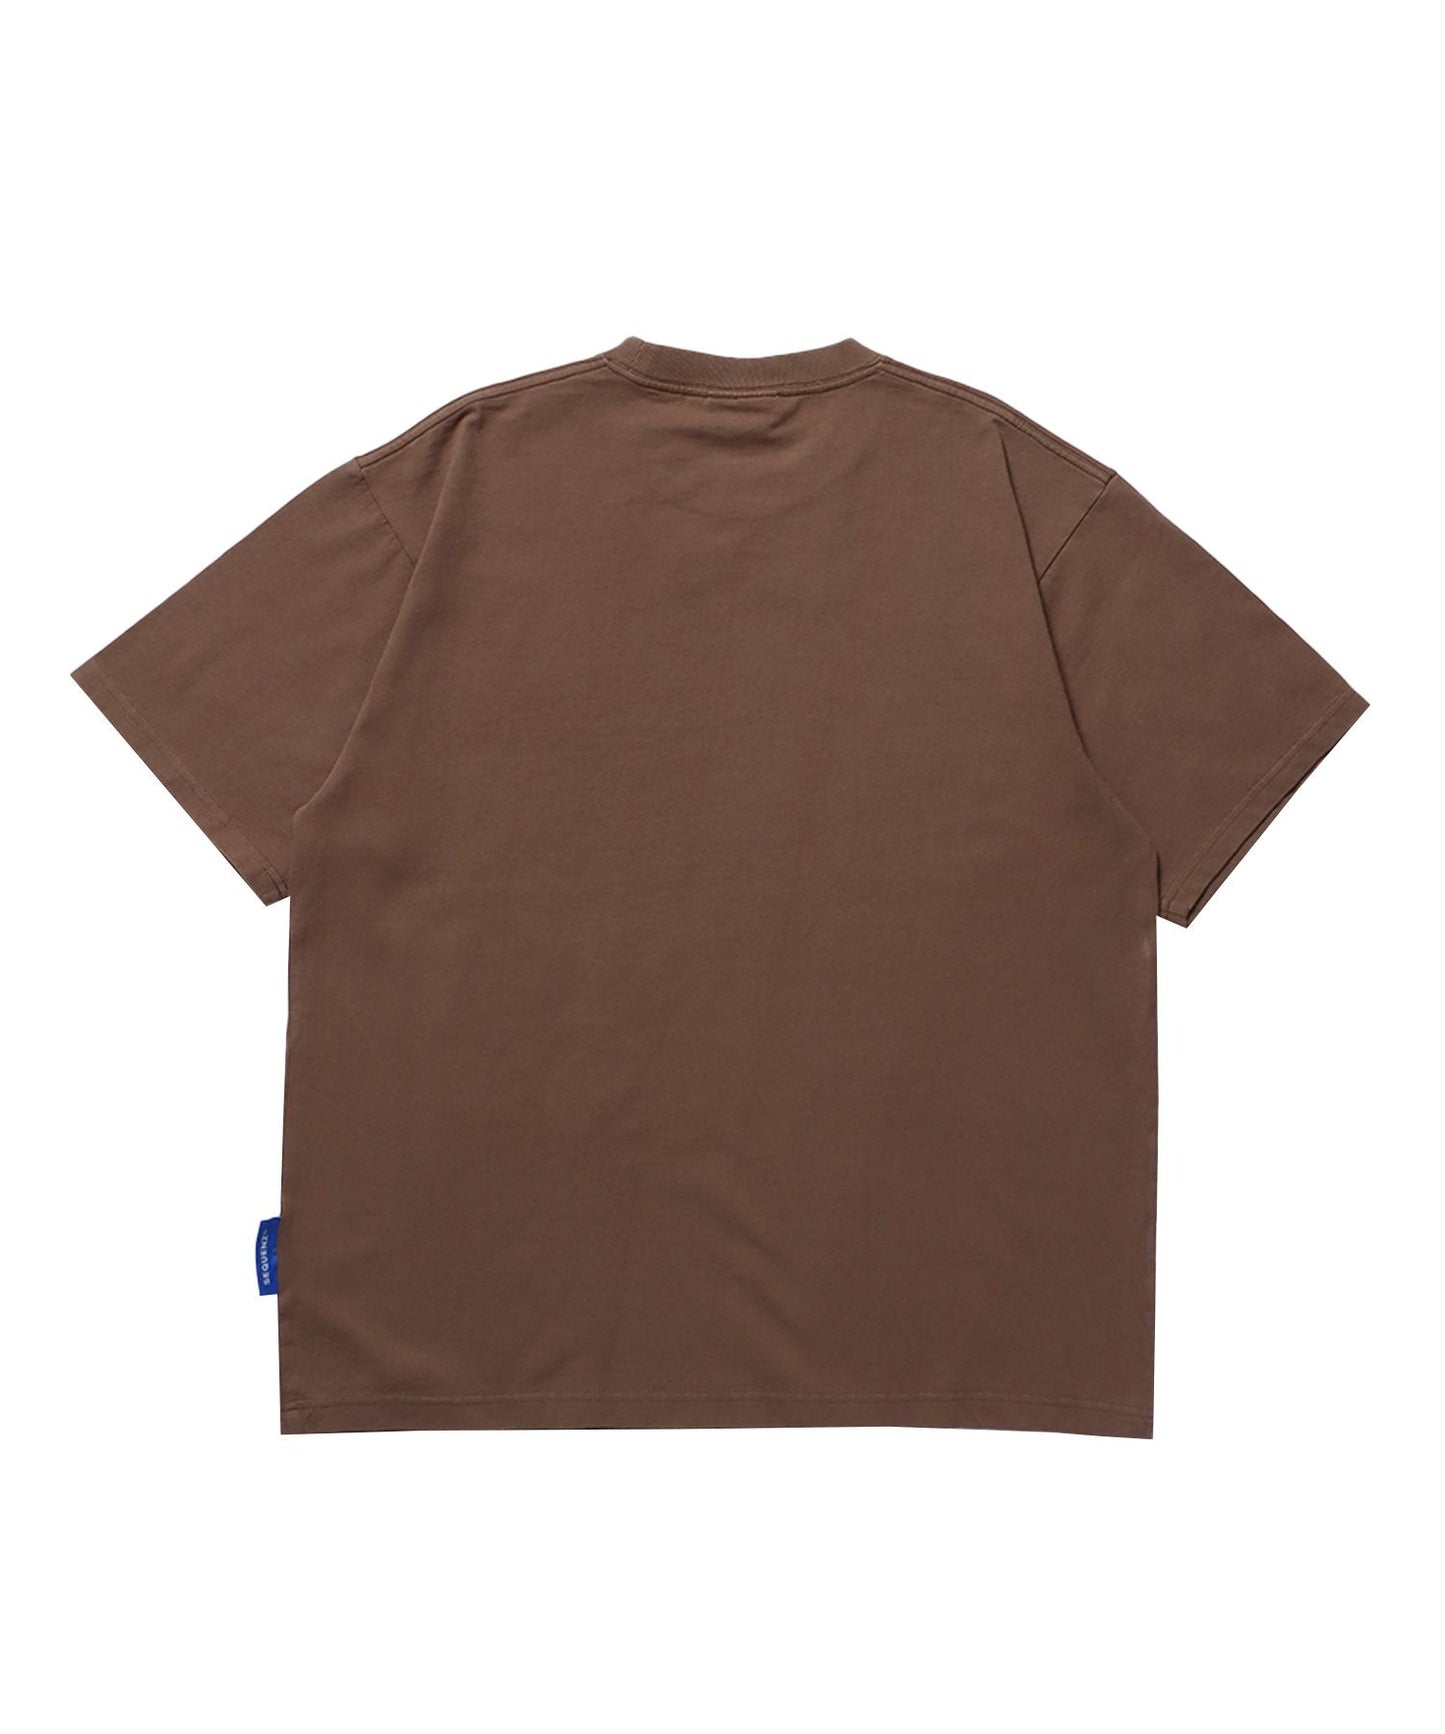 NVL EX COOLAGE SST / 半袖Tシャツ クルーネック ブランドロゴ ハードバイオ ダイス フラワー モカ